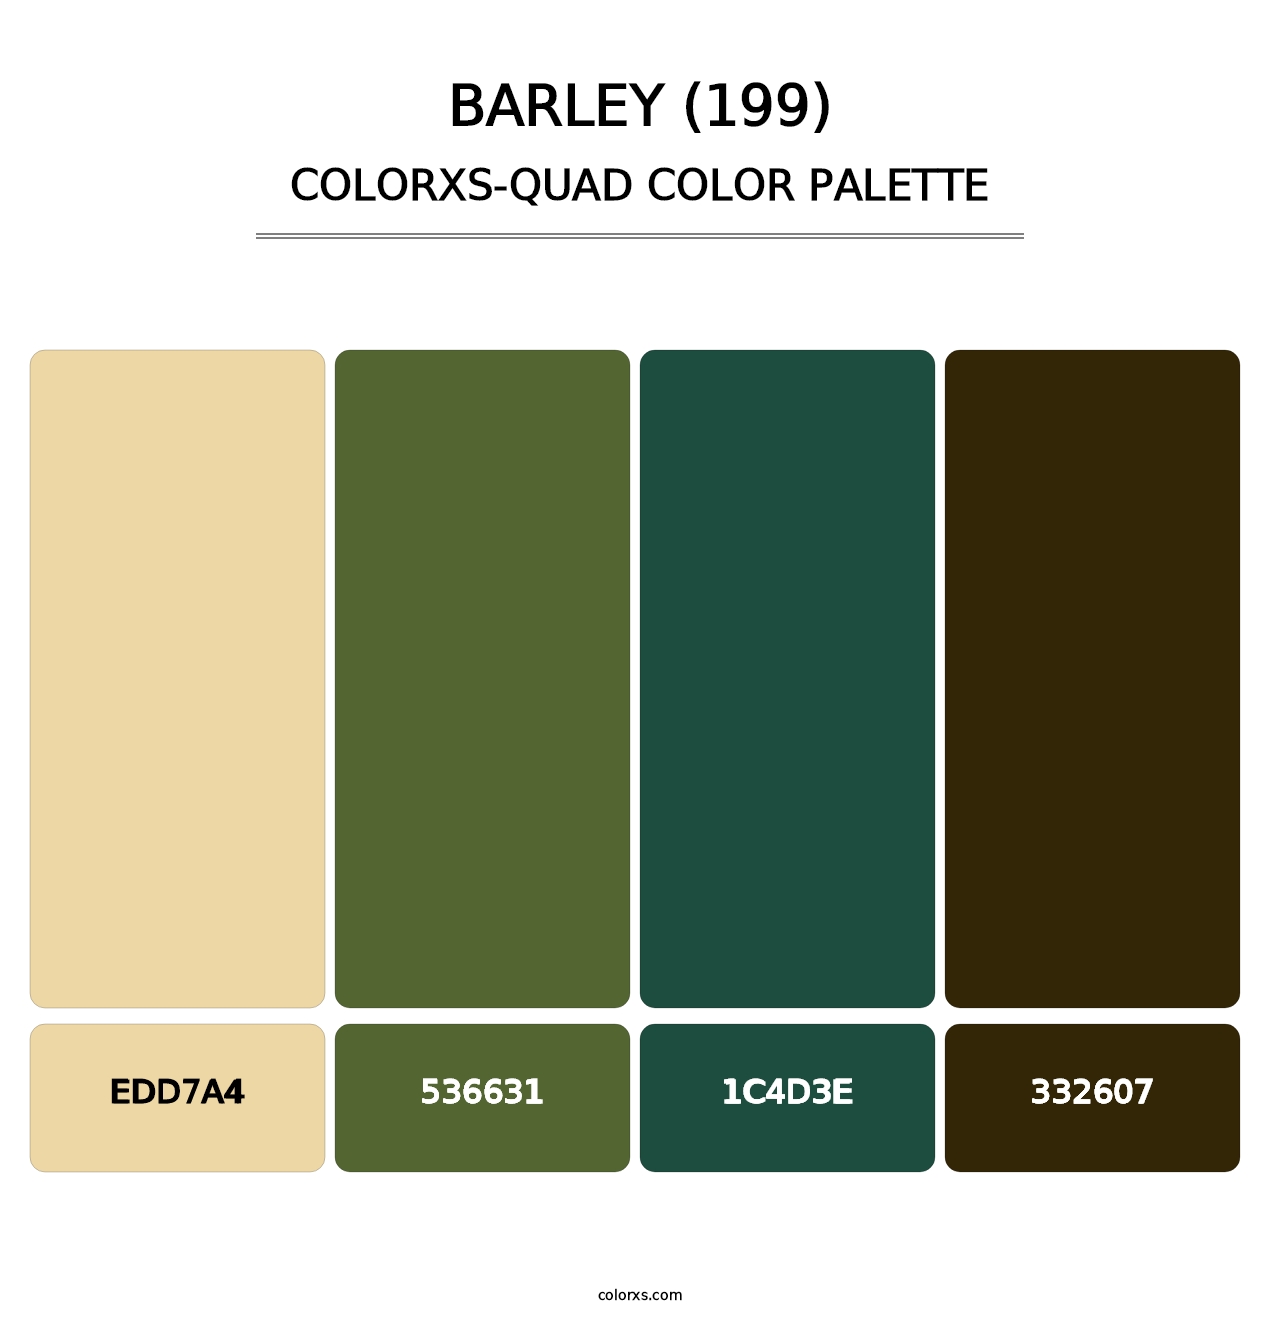 Barley (199) - Colorxs Quad Palette